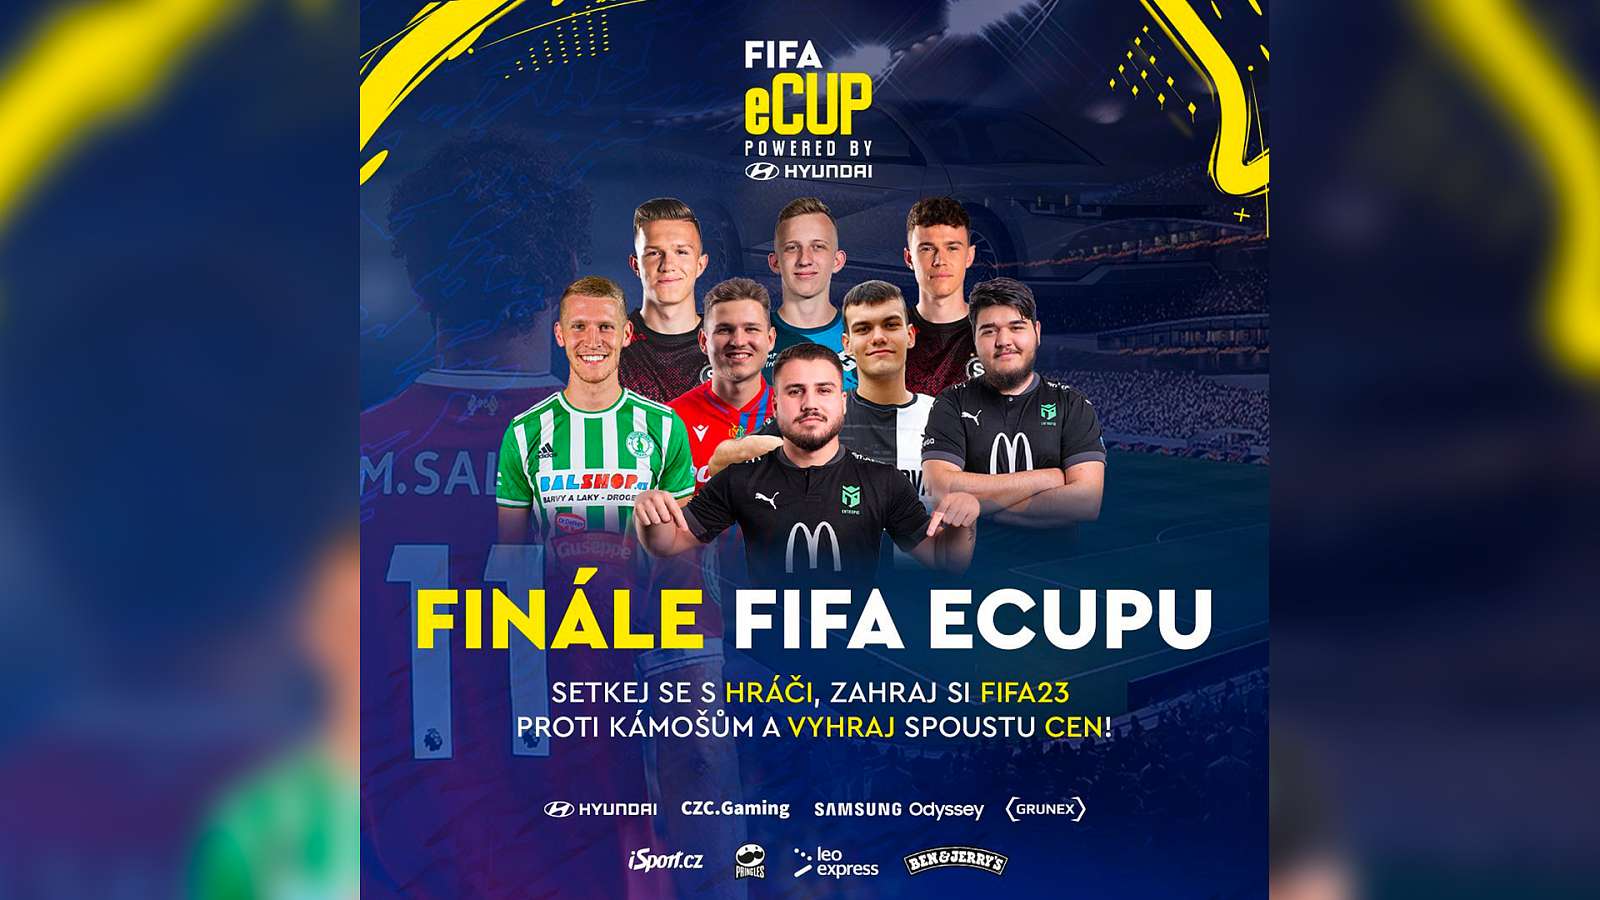 Sleduj eCUP ve hře FIFA a vyhraj skvělé ceny!